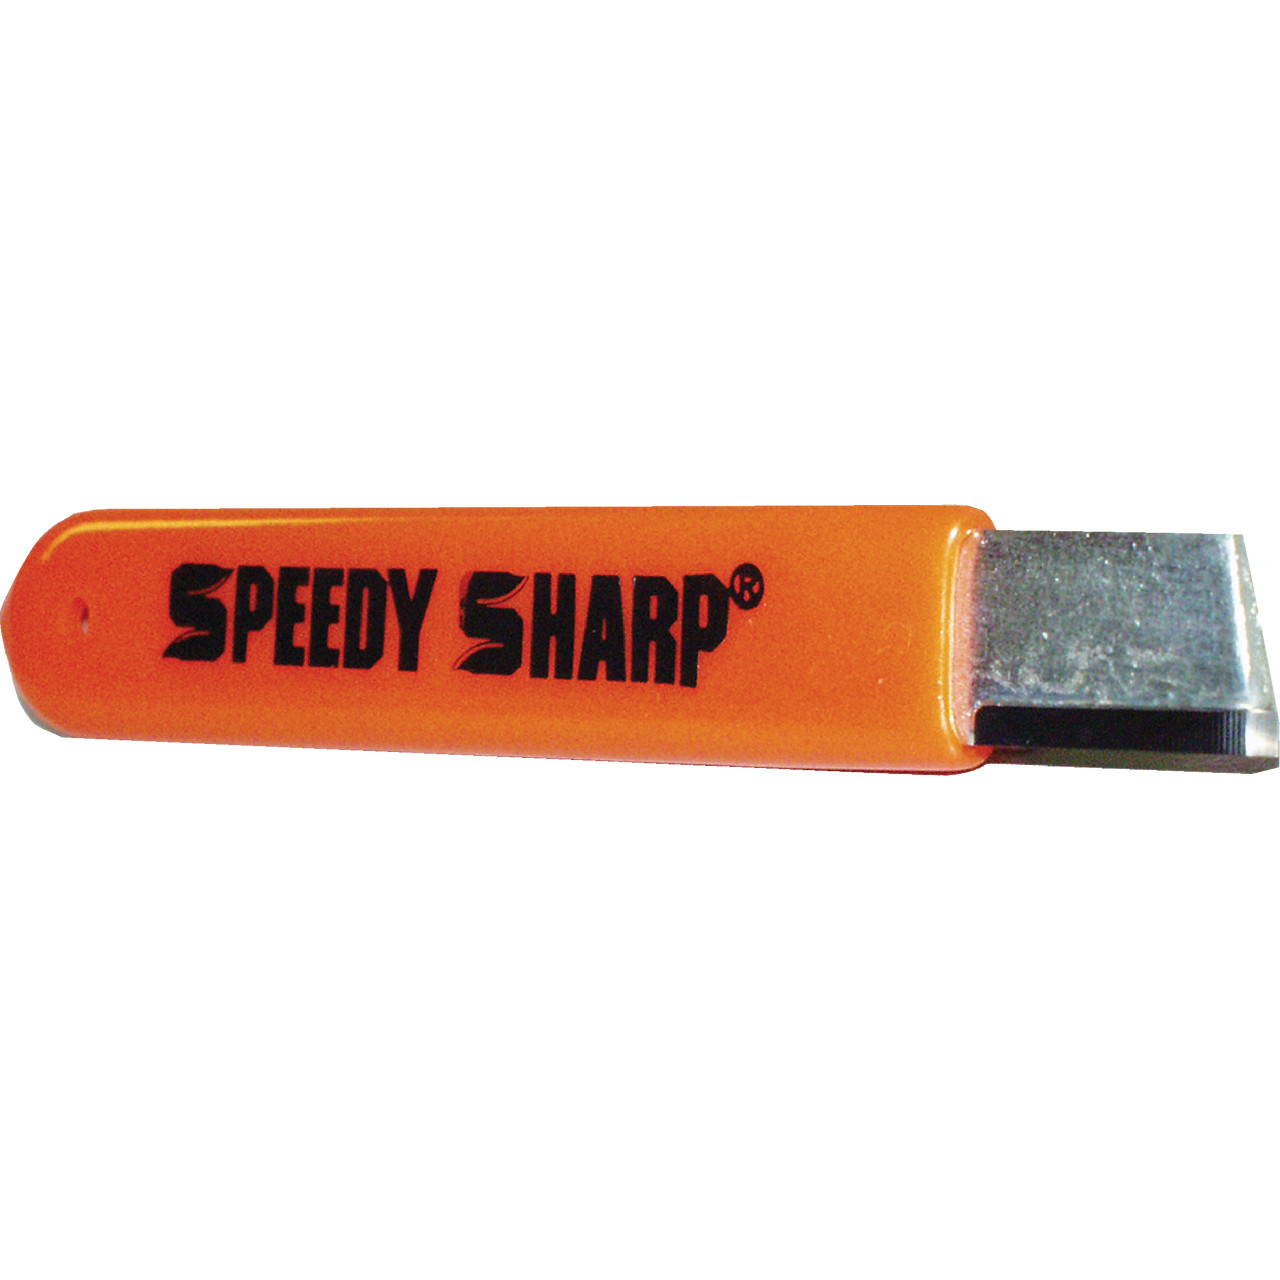 Speedy Sharp Carbide Knife Sharpener-Pack of 2 - NEW